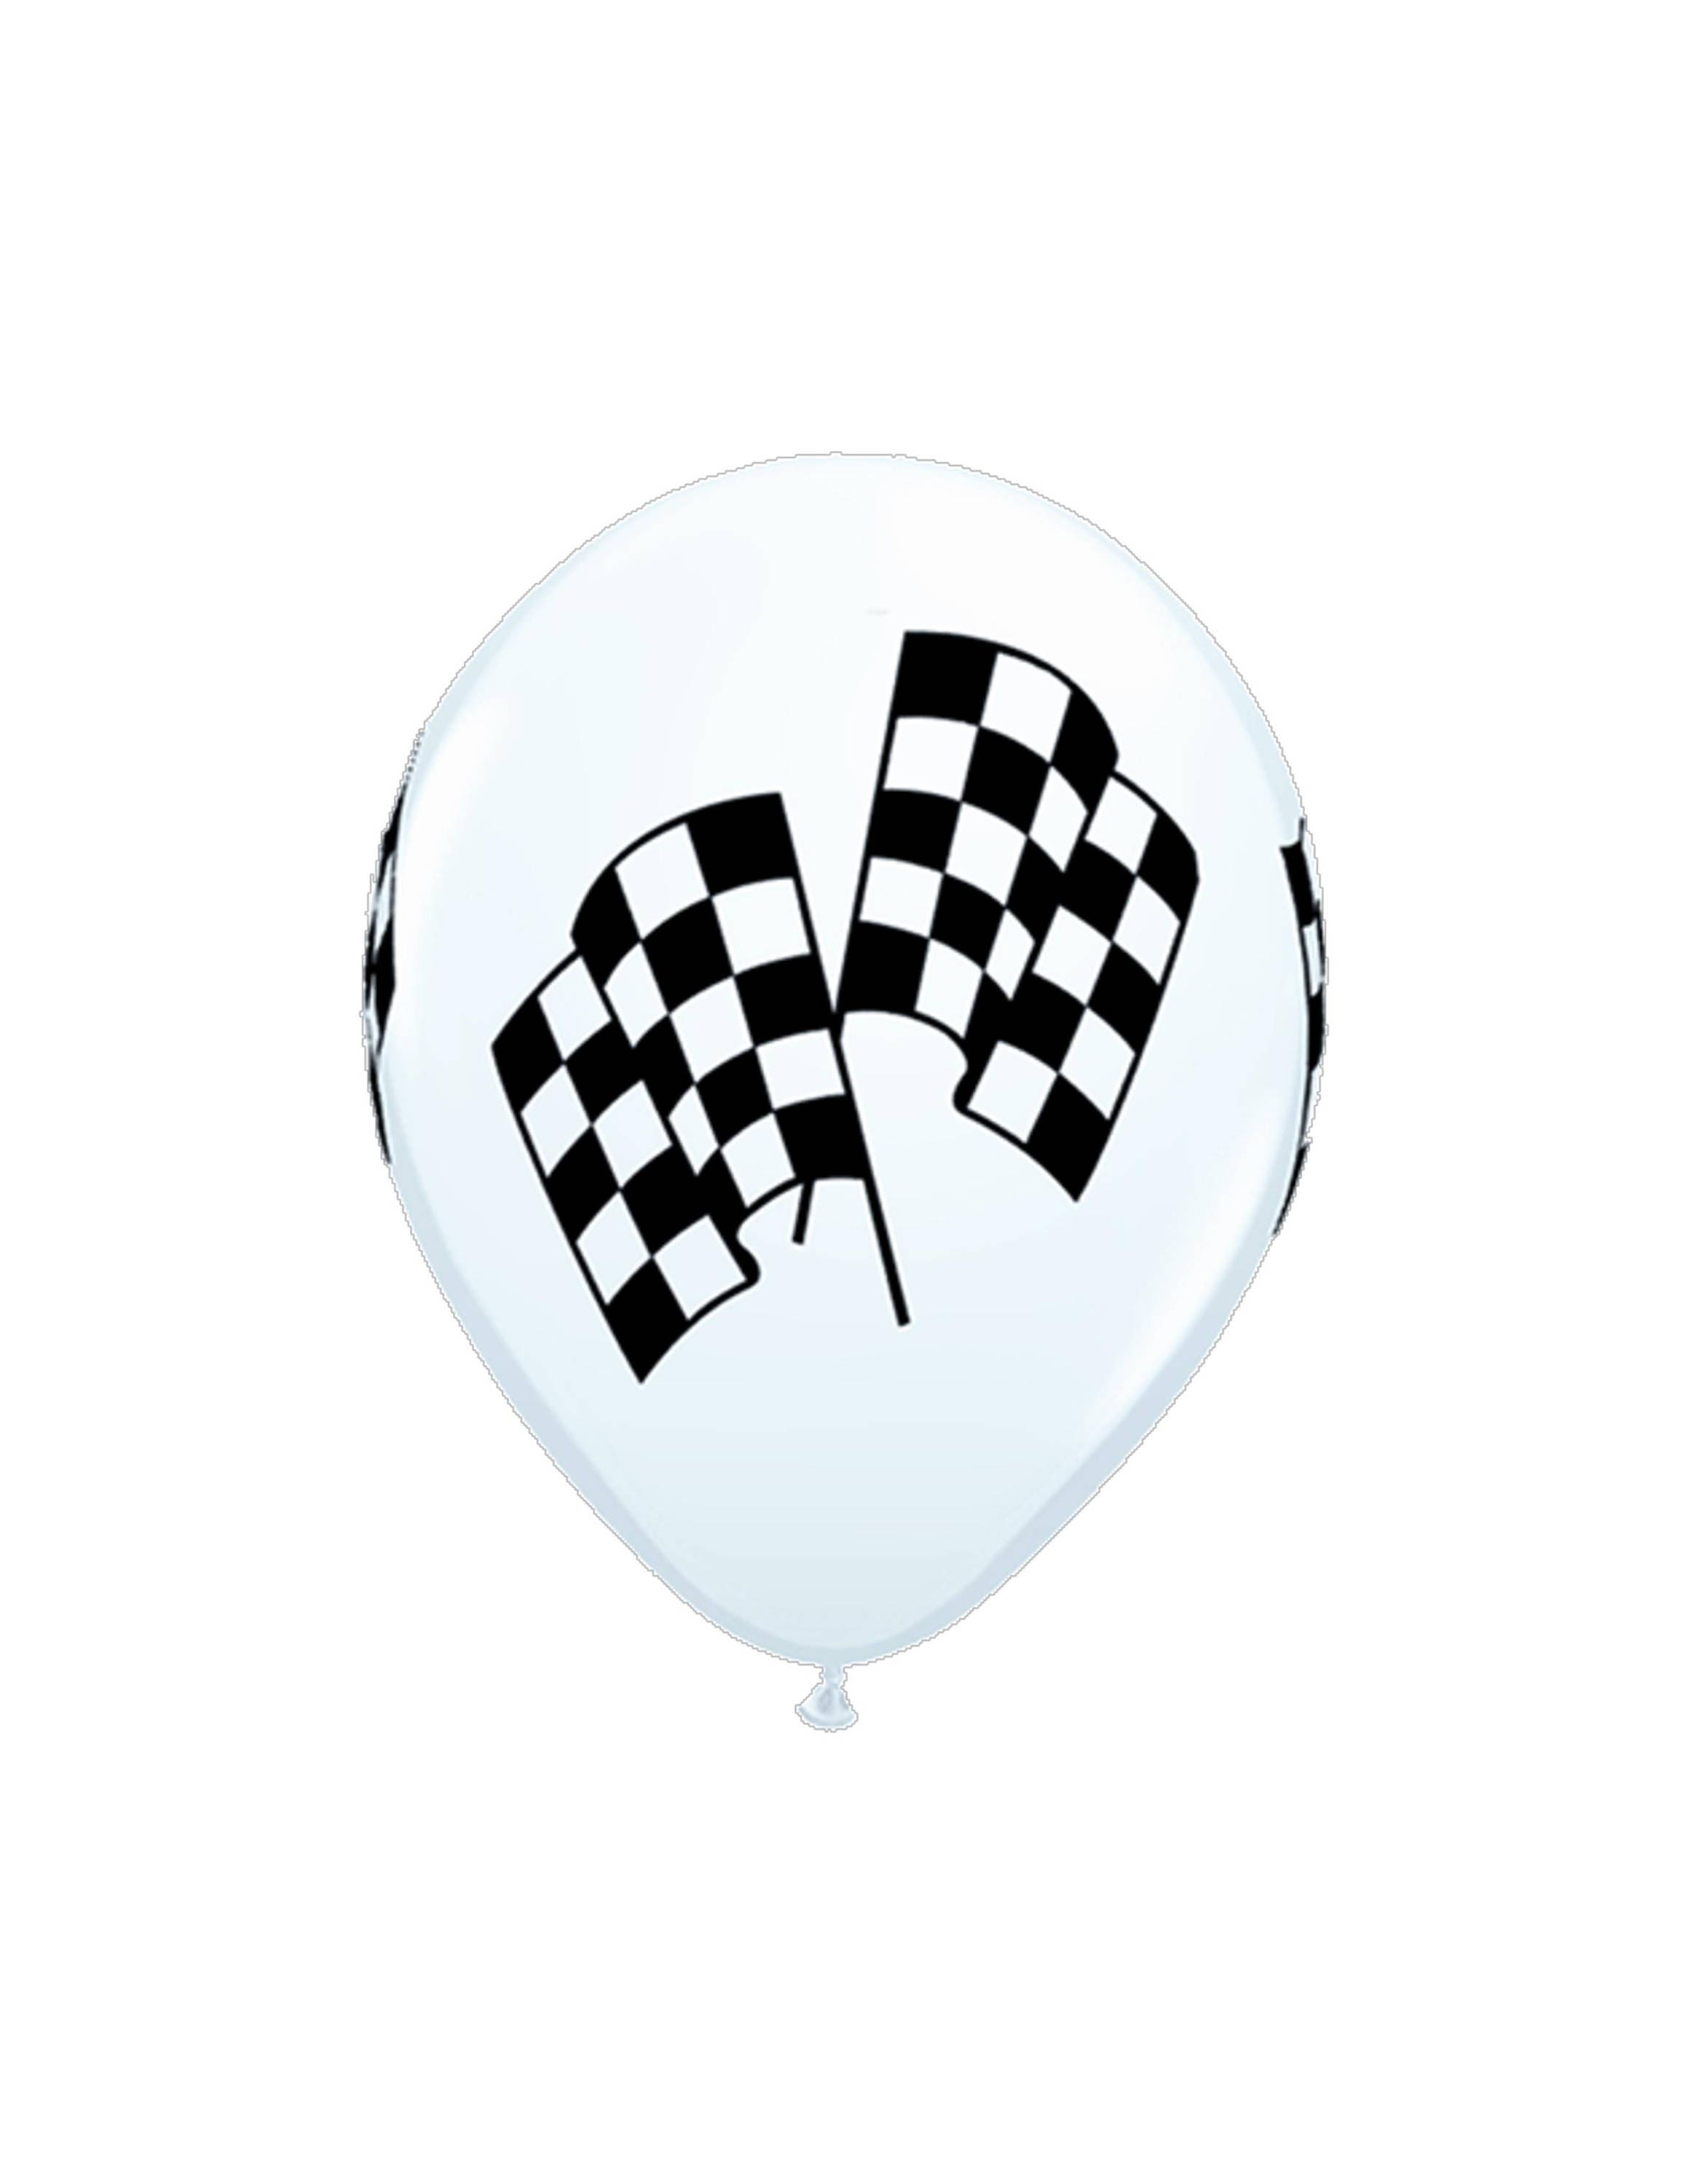 5 Checkered Flag Balloons Race Car Balloon Racing Party - Etsy